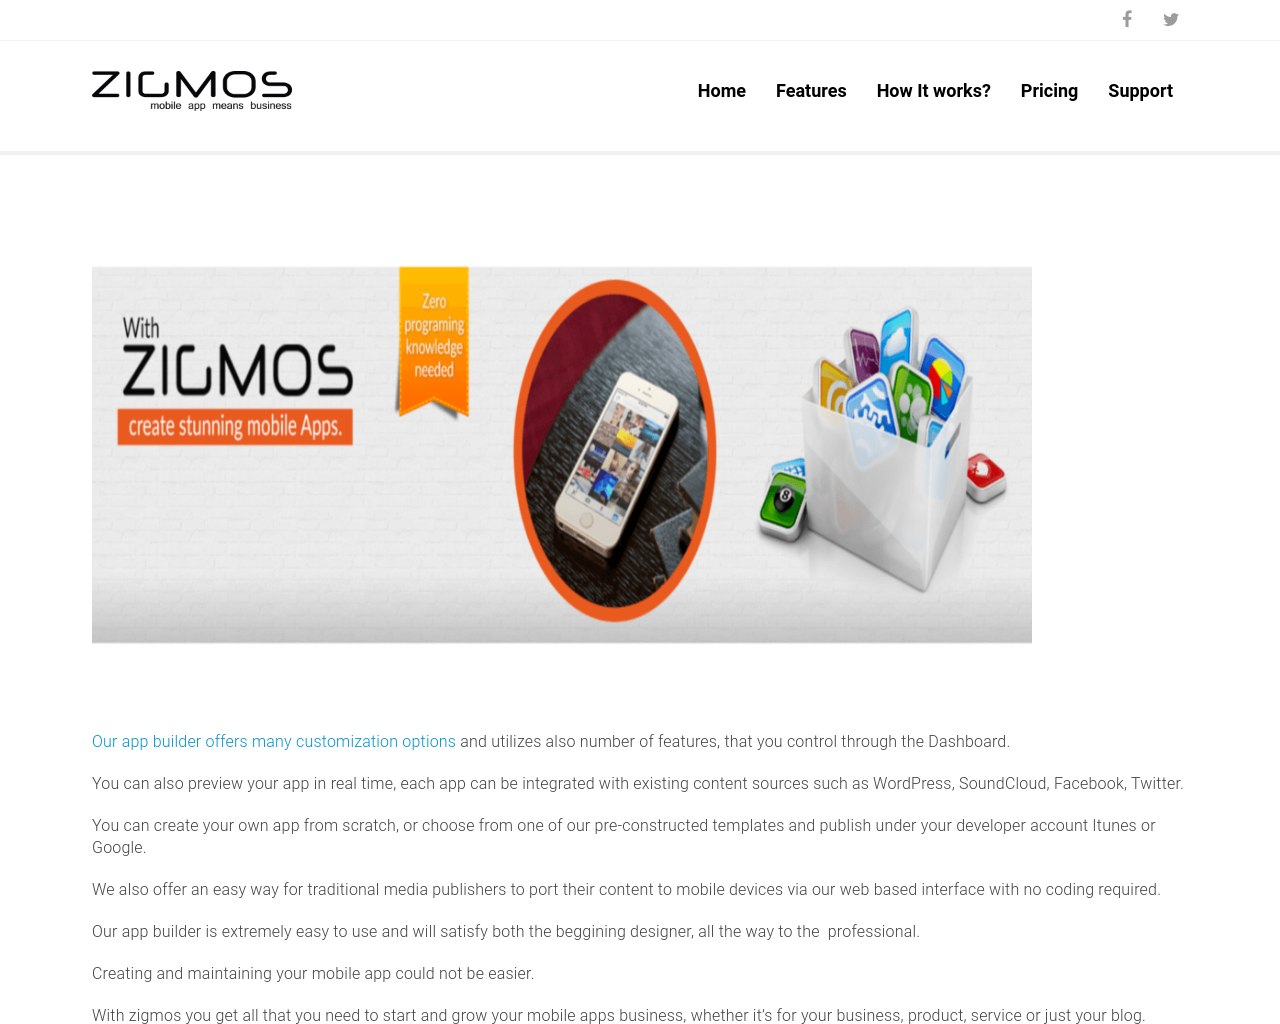 zigmos.com